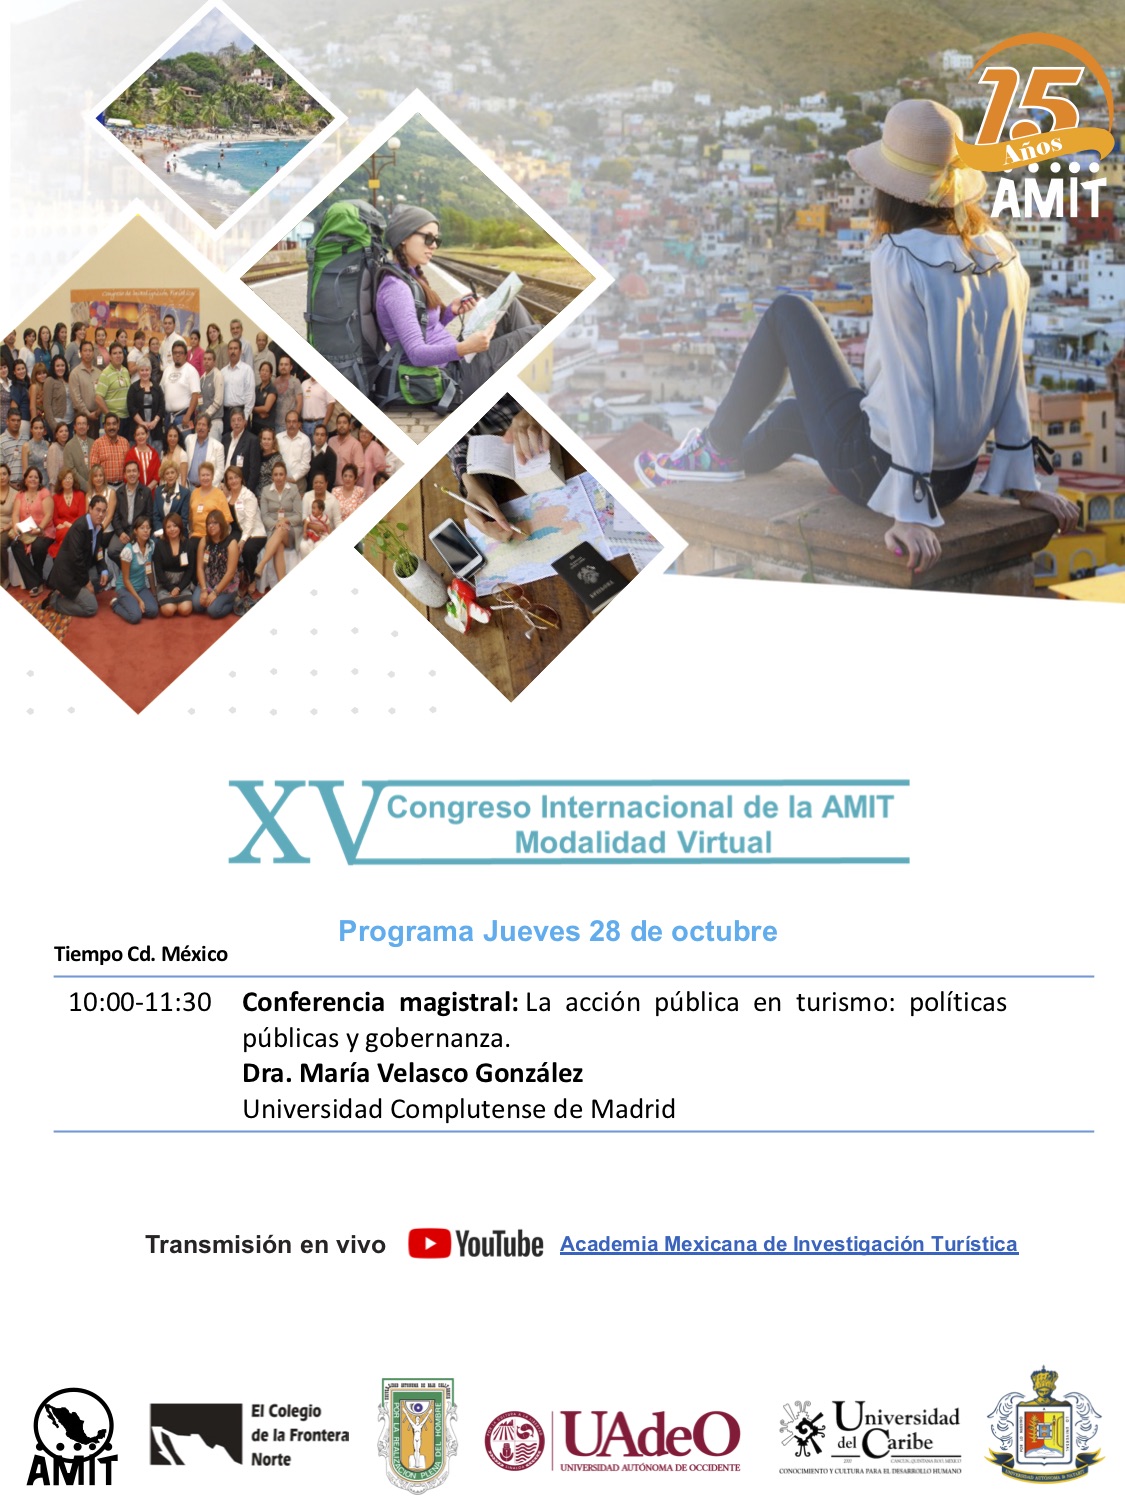 XV Congreso Internacional de la AMIT. Modalidad Virtual. 26-29 octubre de 2021 - 5